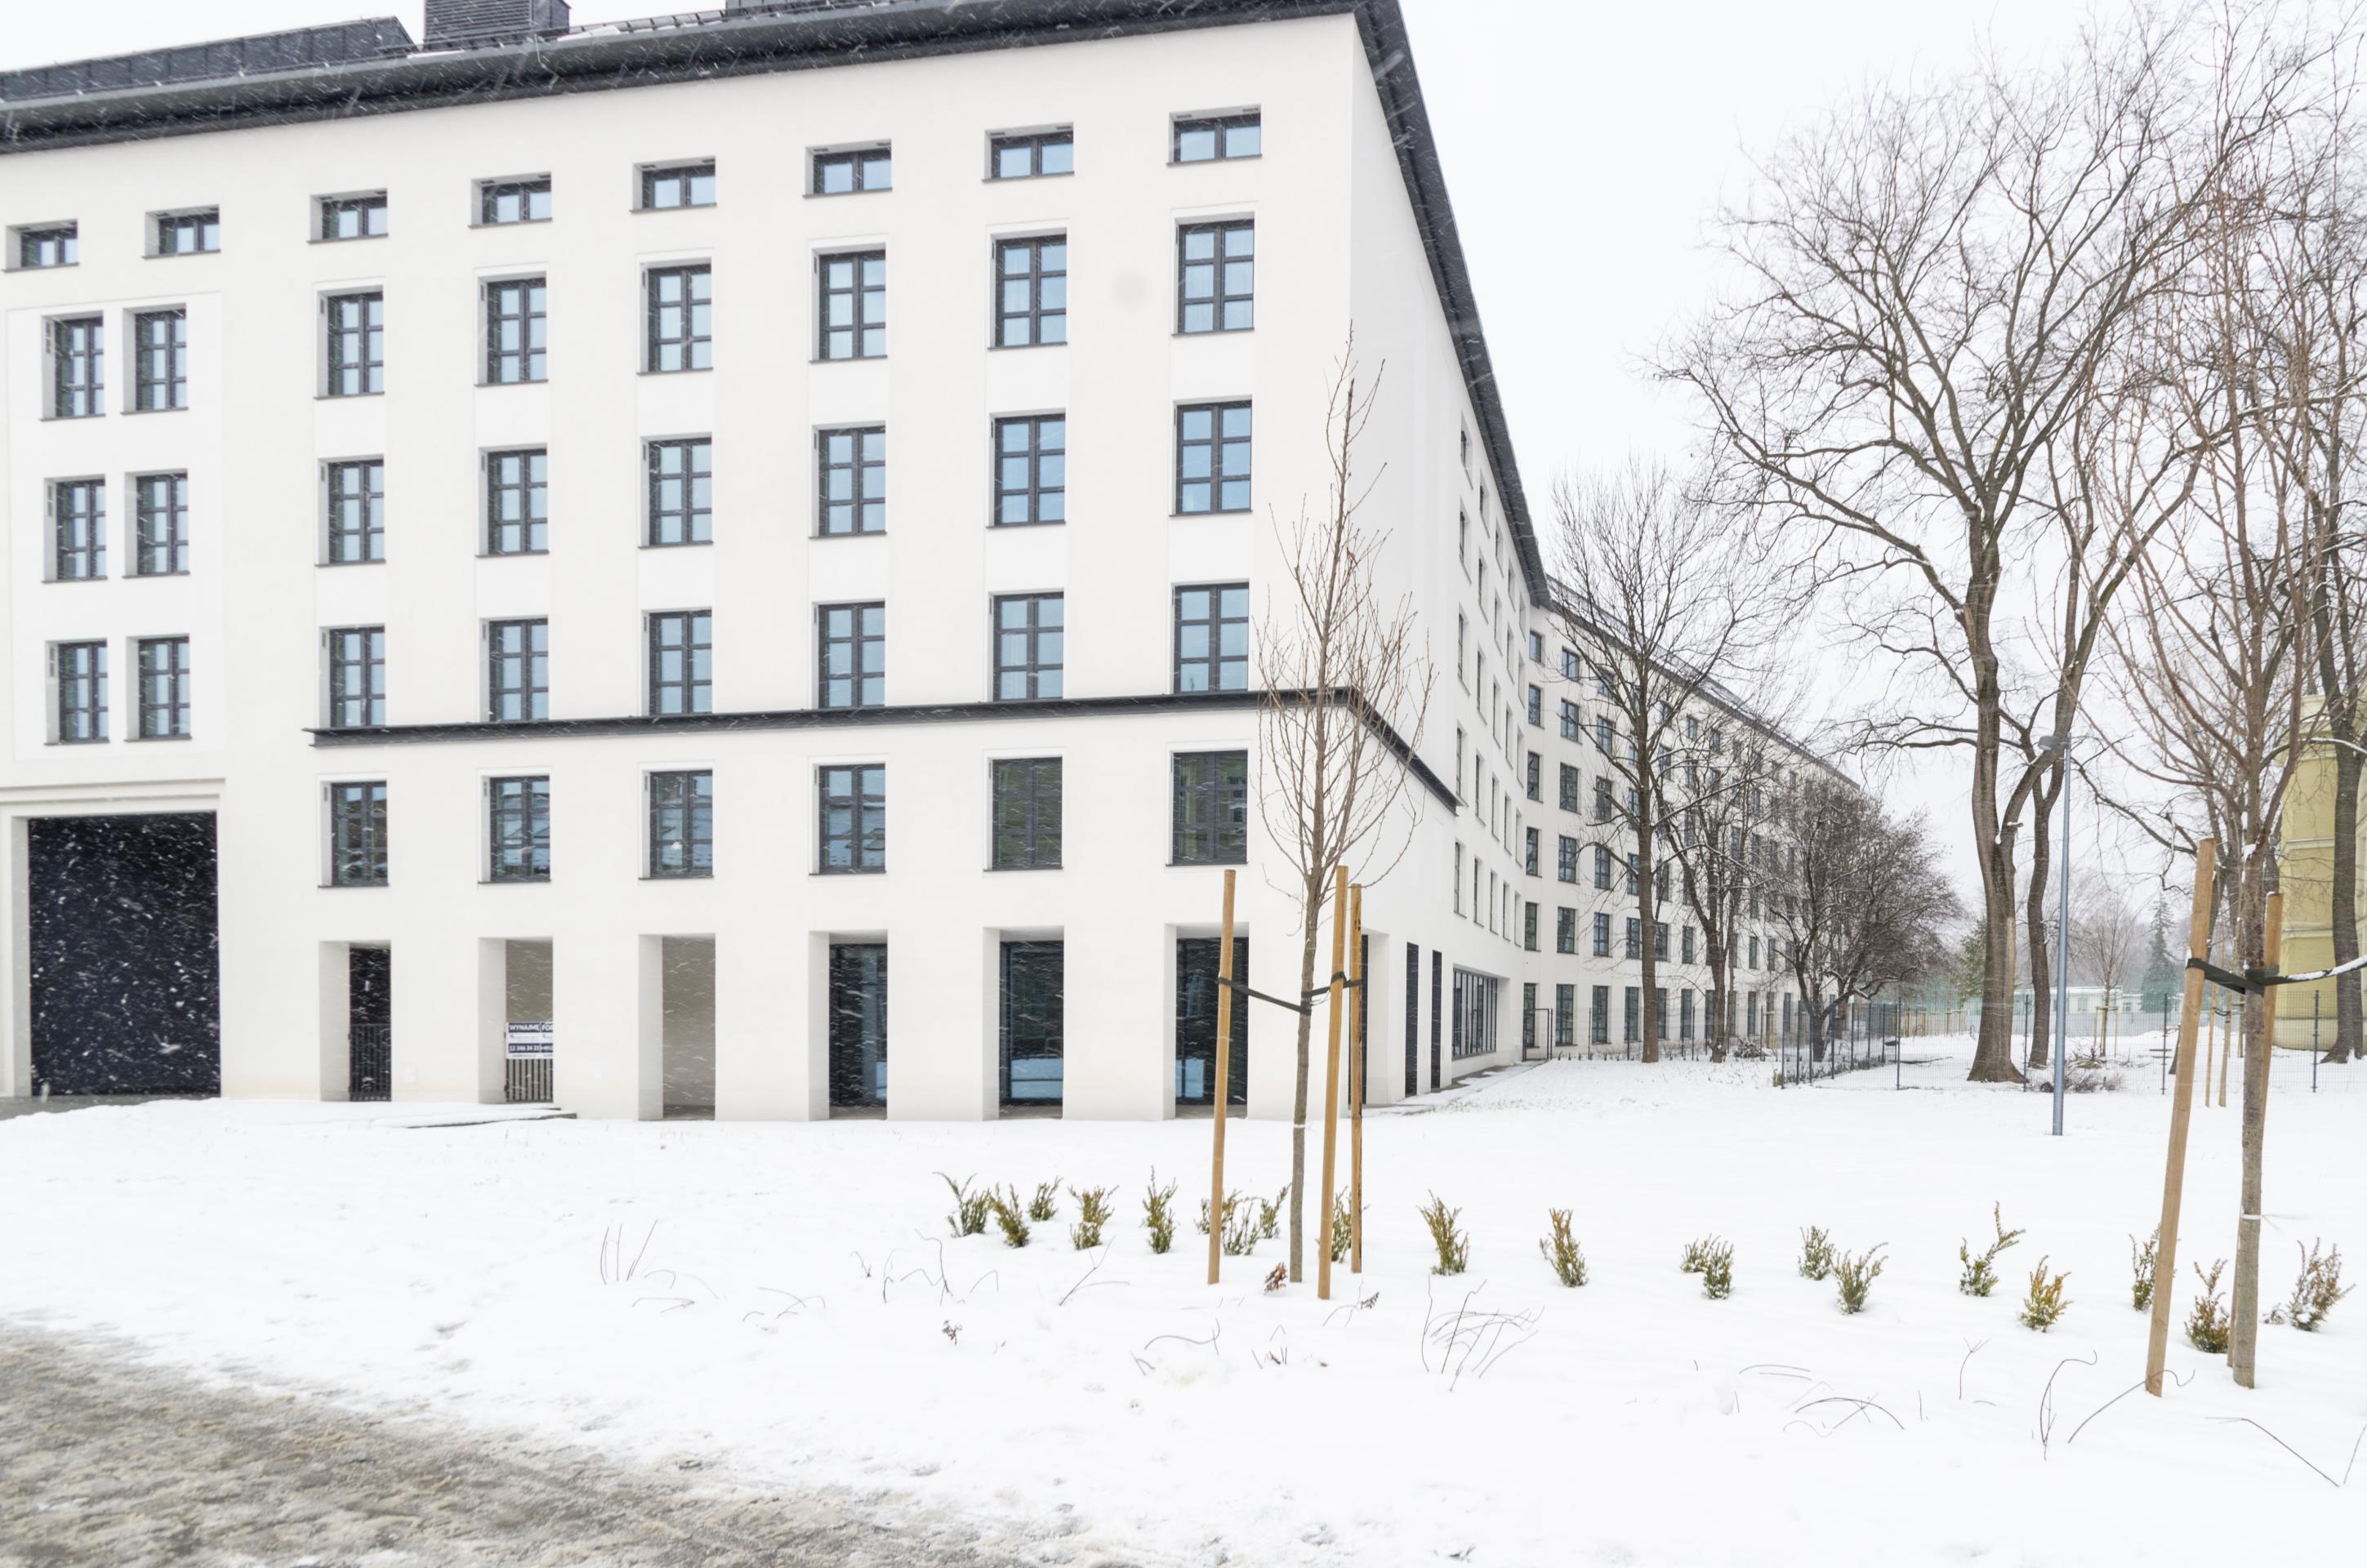 Modern studio apartments – Center of Krakow